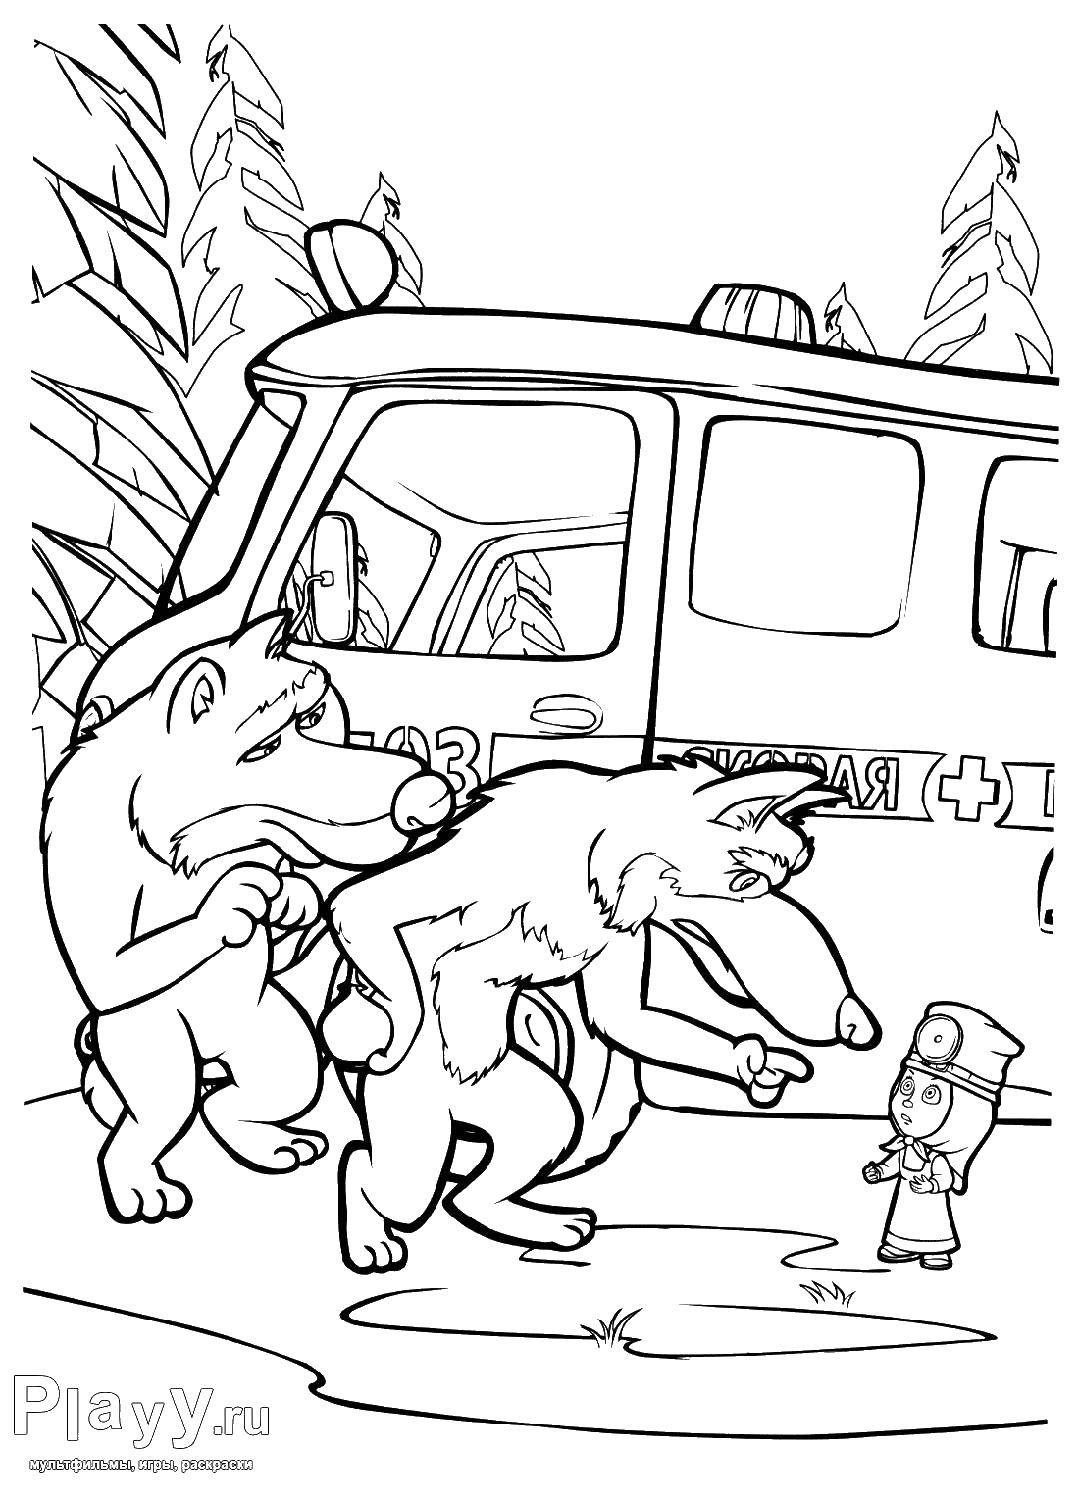 Раскраски для детей про озорную Машу из мультфильма Маша и медведь  Волки ругают машу